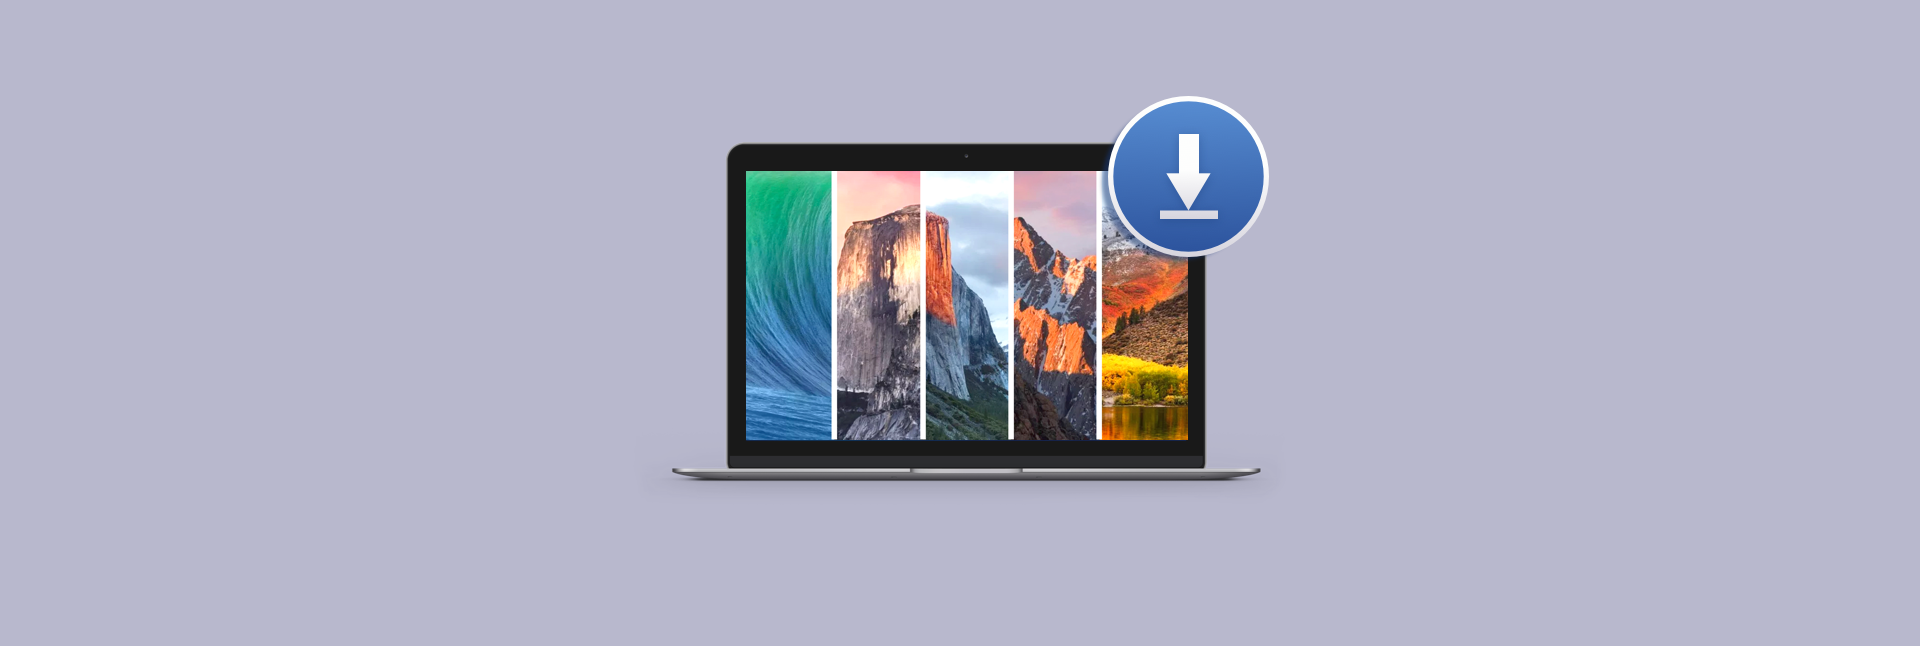 Mac Os X 10.8 Free Download